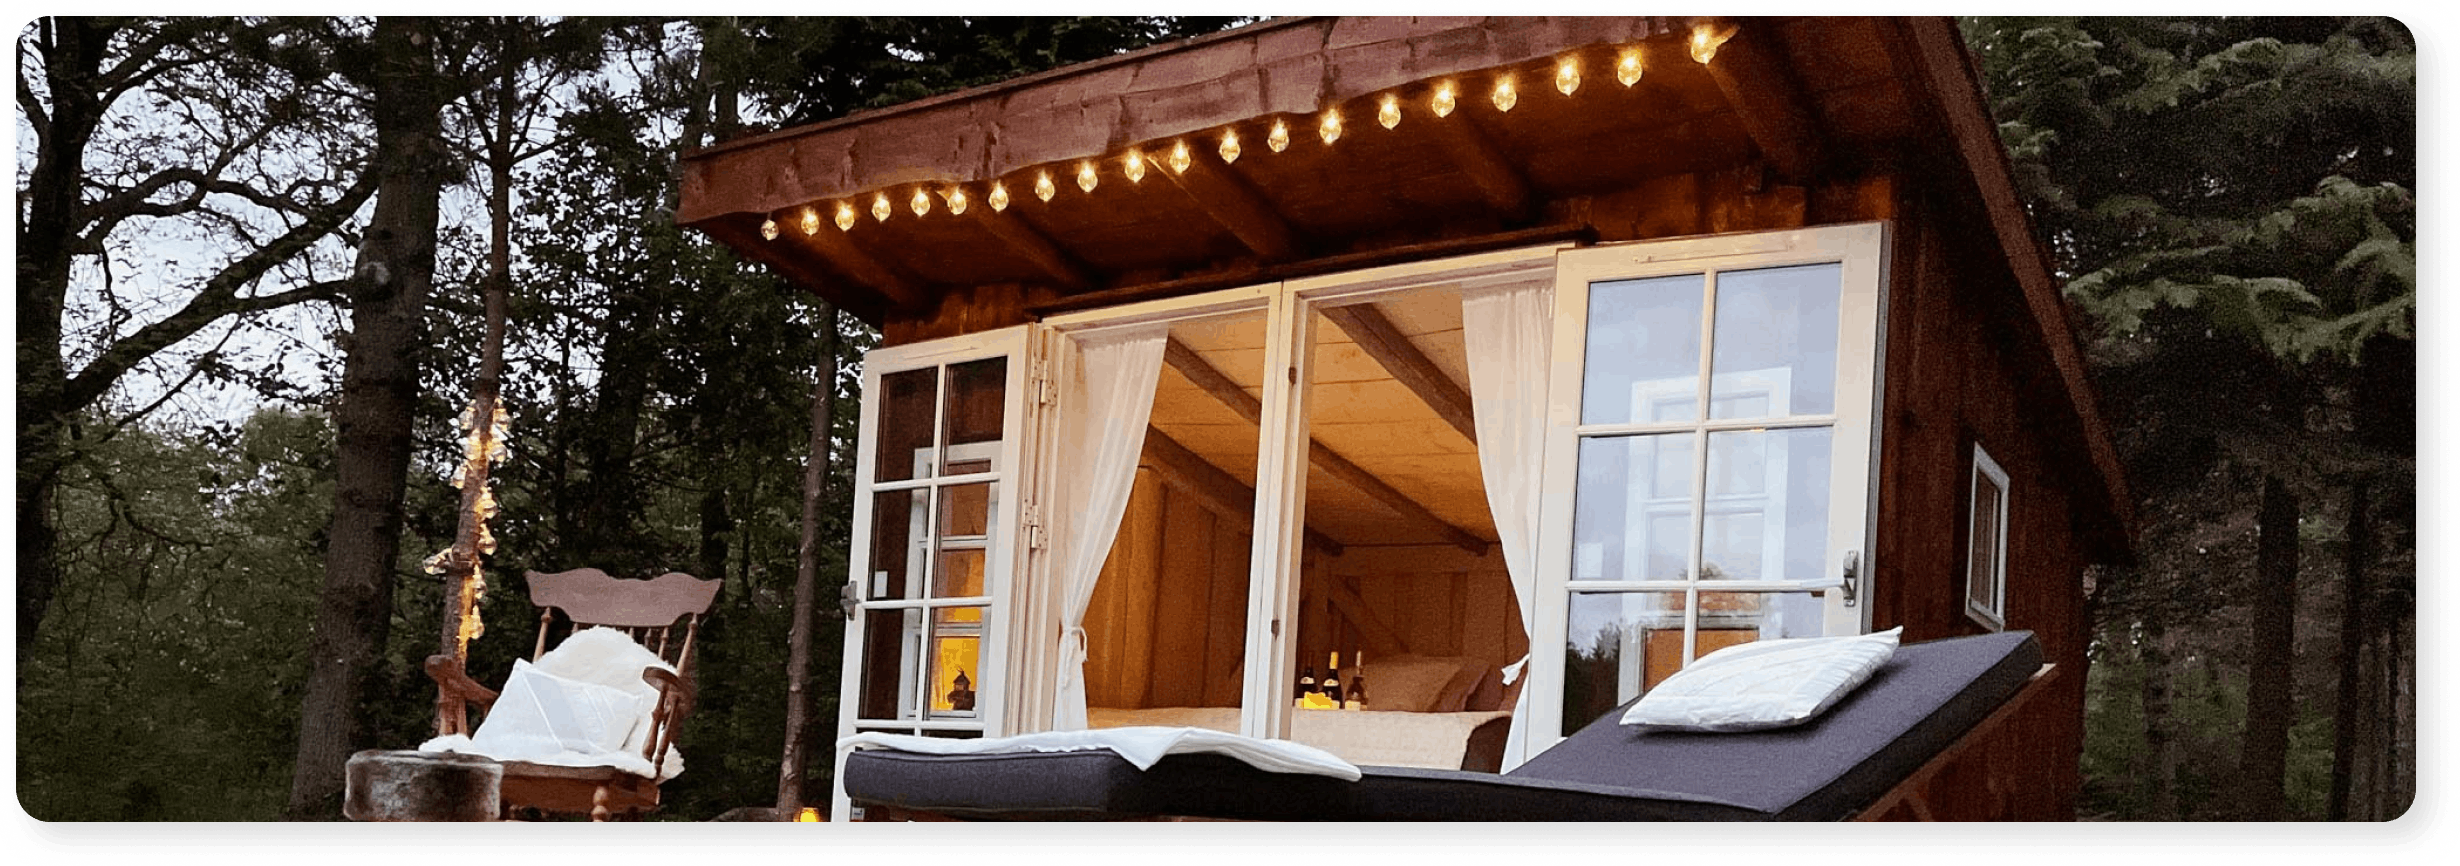 Solskinshytten - Overnatning i hytte på Bornholm